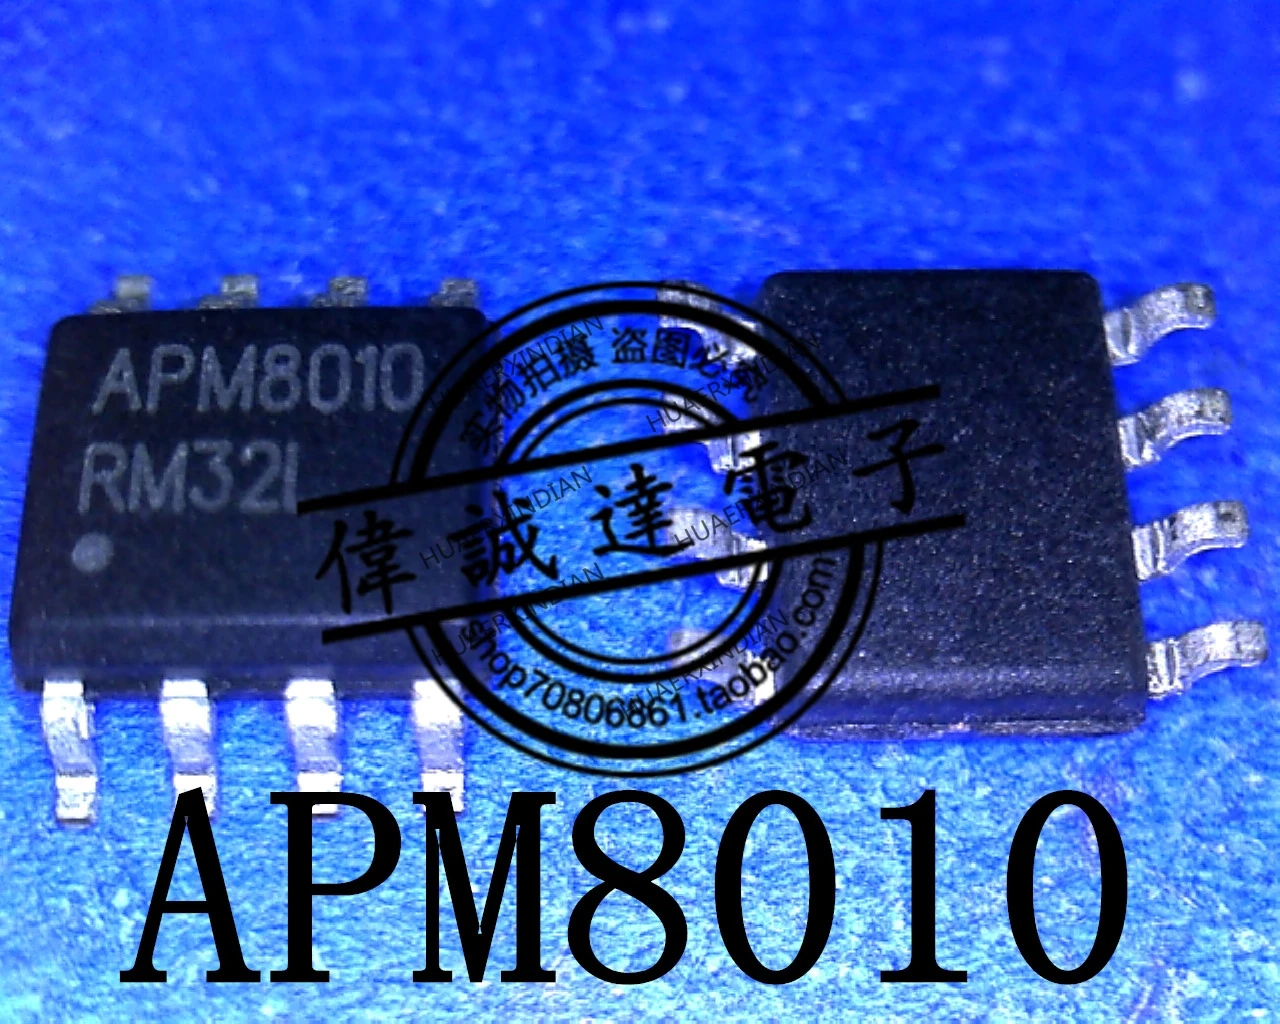  Новый оригинальный APM8010 SOP-8 с высококачественным реальным изображением в наличии